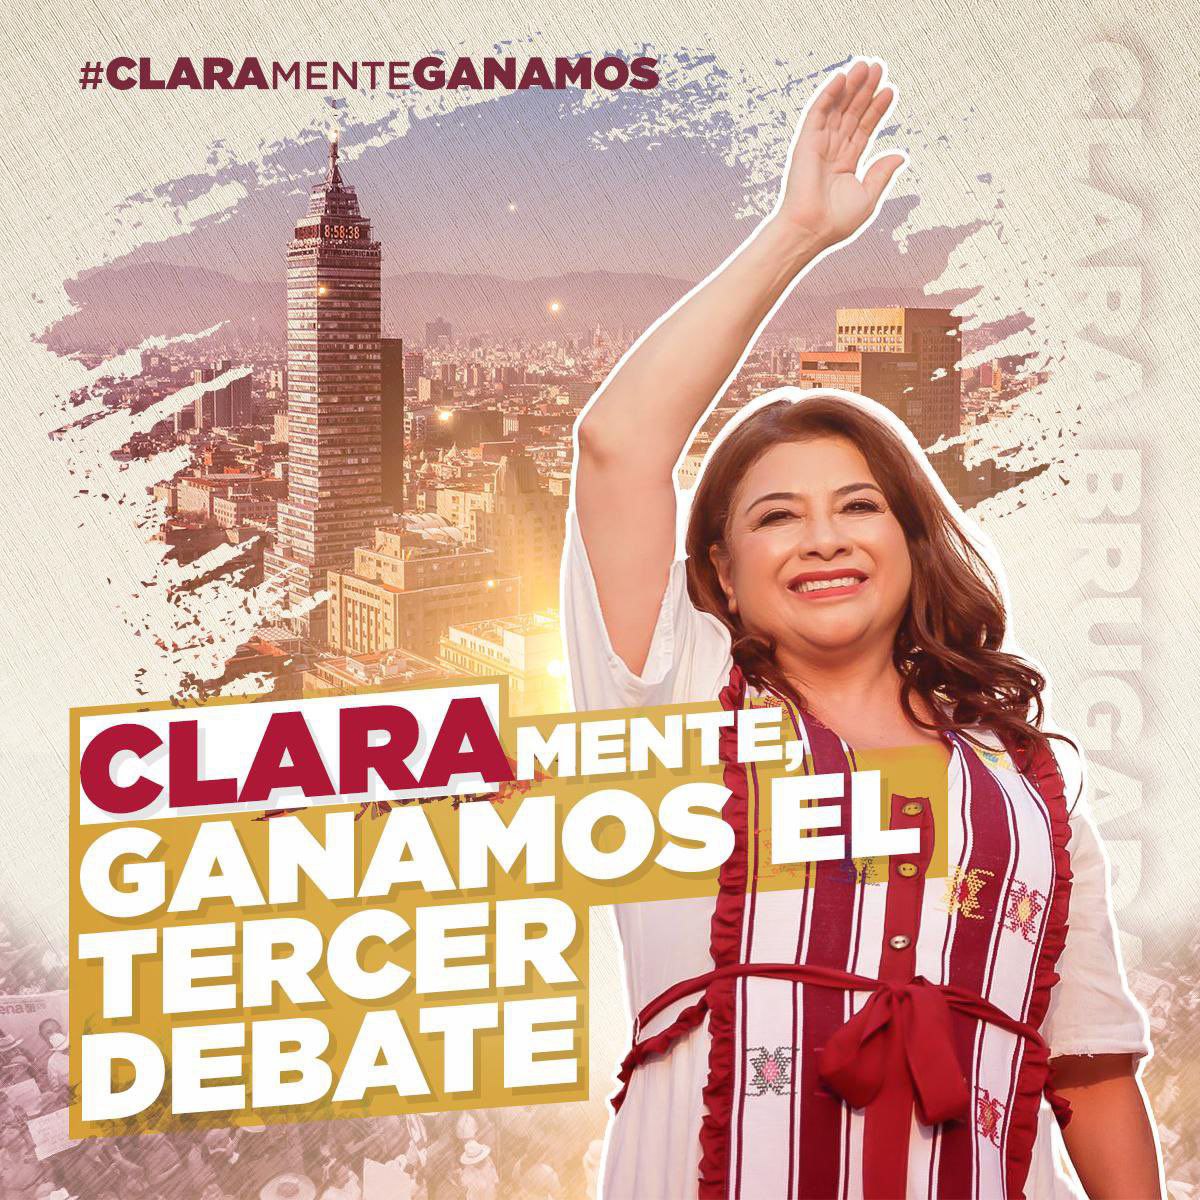 #ClaraJefaDeGobierno por una #CDMX con justicia, verdad y una vida digna para sus habitantes. #ClaramenteGanamos Yo con @ClaraBrugadaM 🫶🏻 #DebateChilango